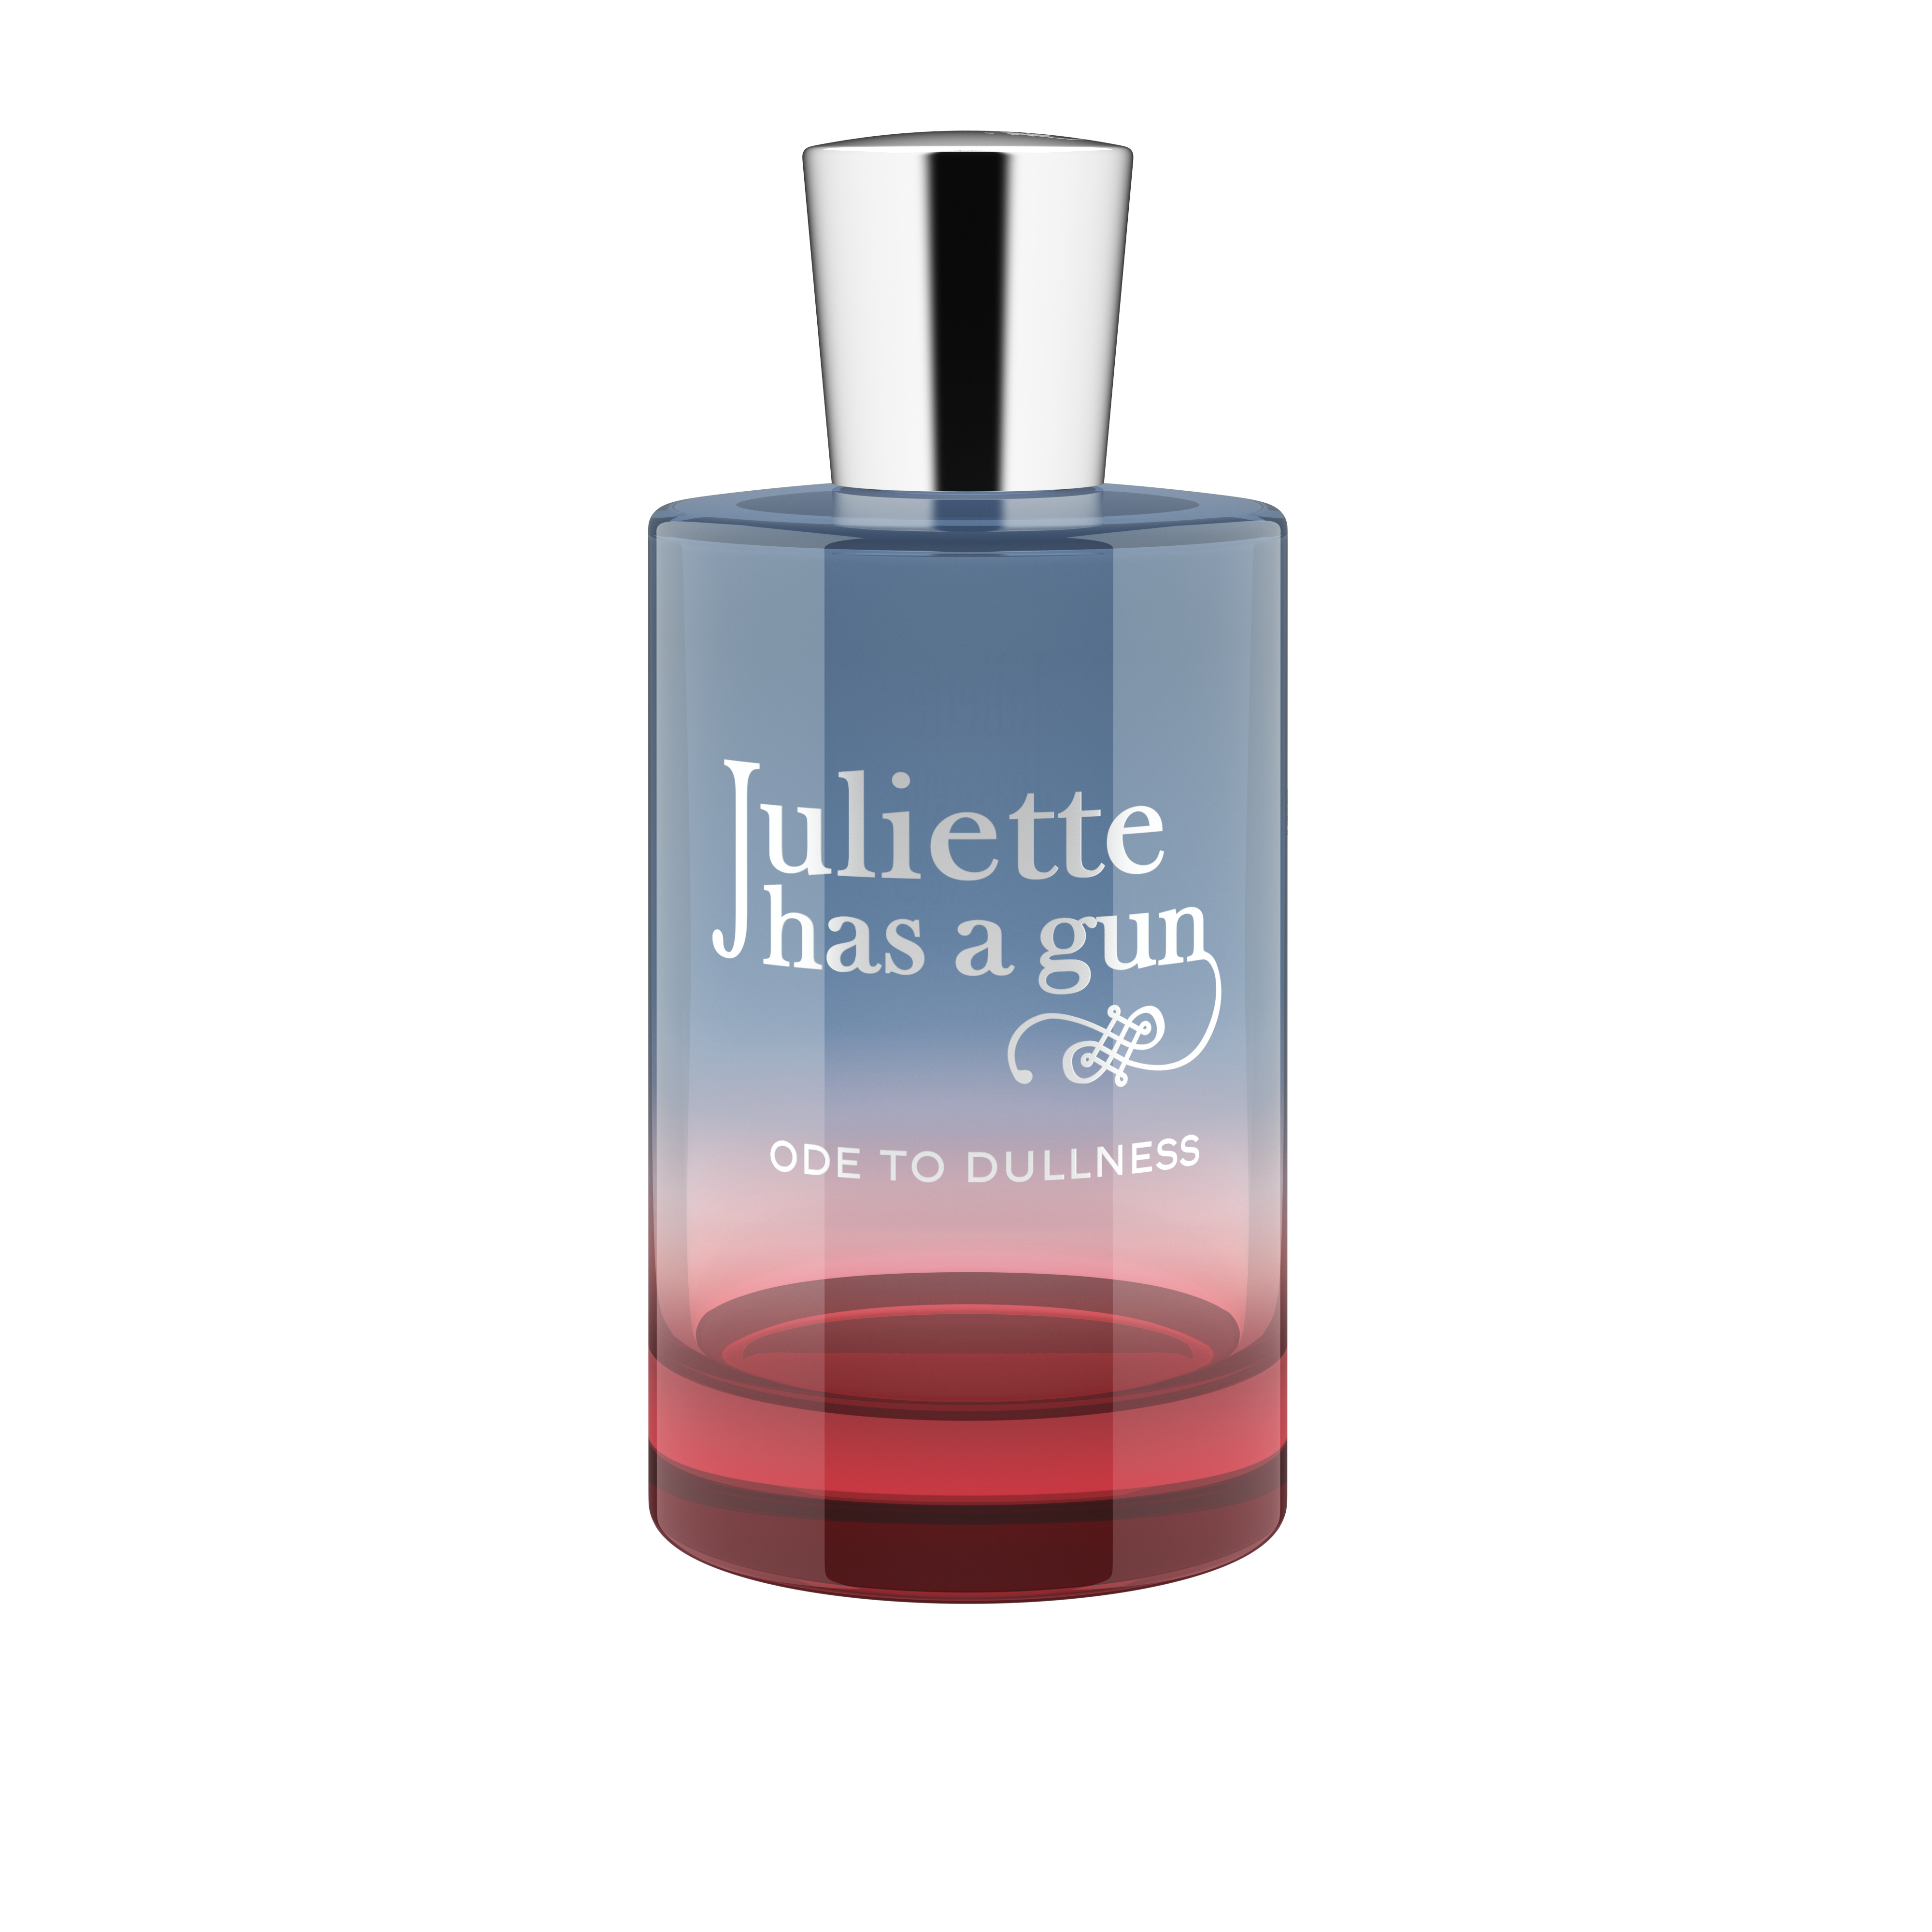 Juliette has a Gun - Ode to Dullness Eau de Parfum